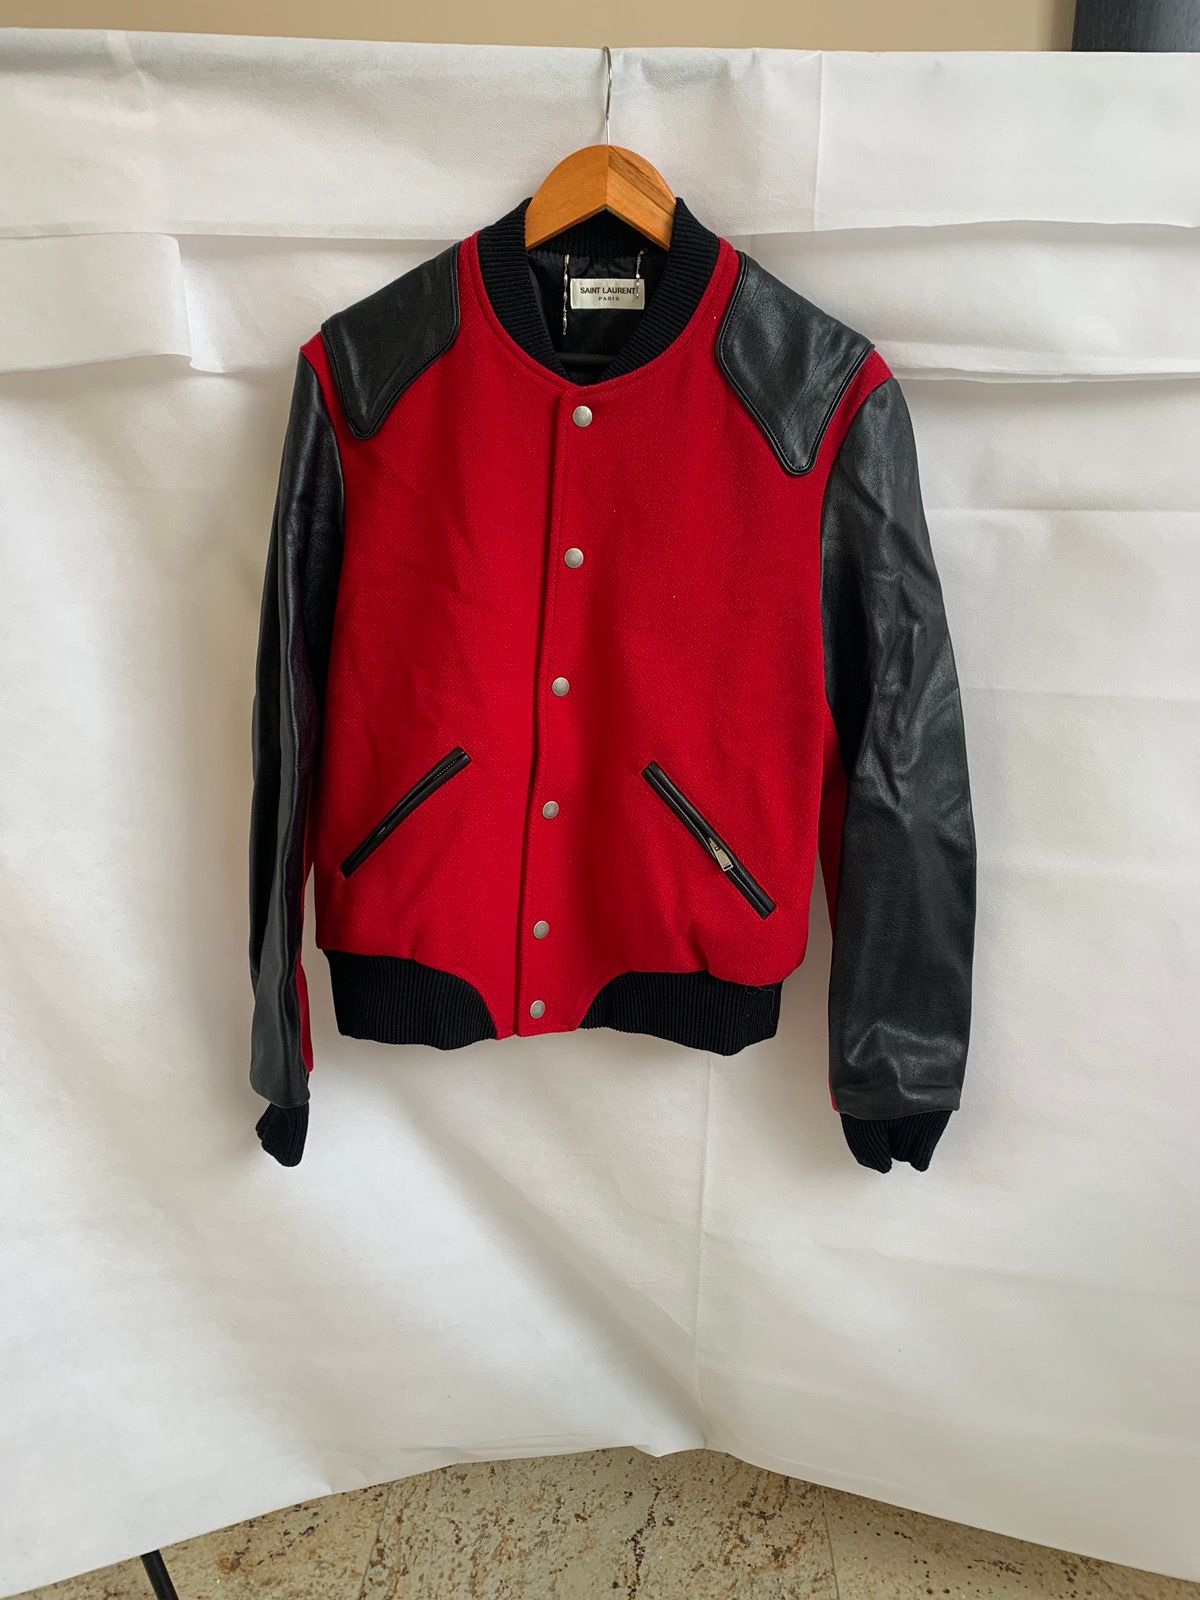 Saint Laurent Paris “Heaven” Teddy Bomber Jacket in Red Wool & Black ...